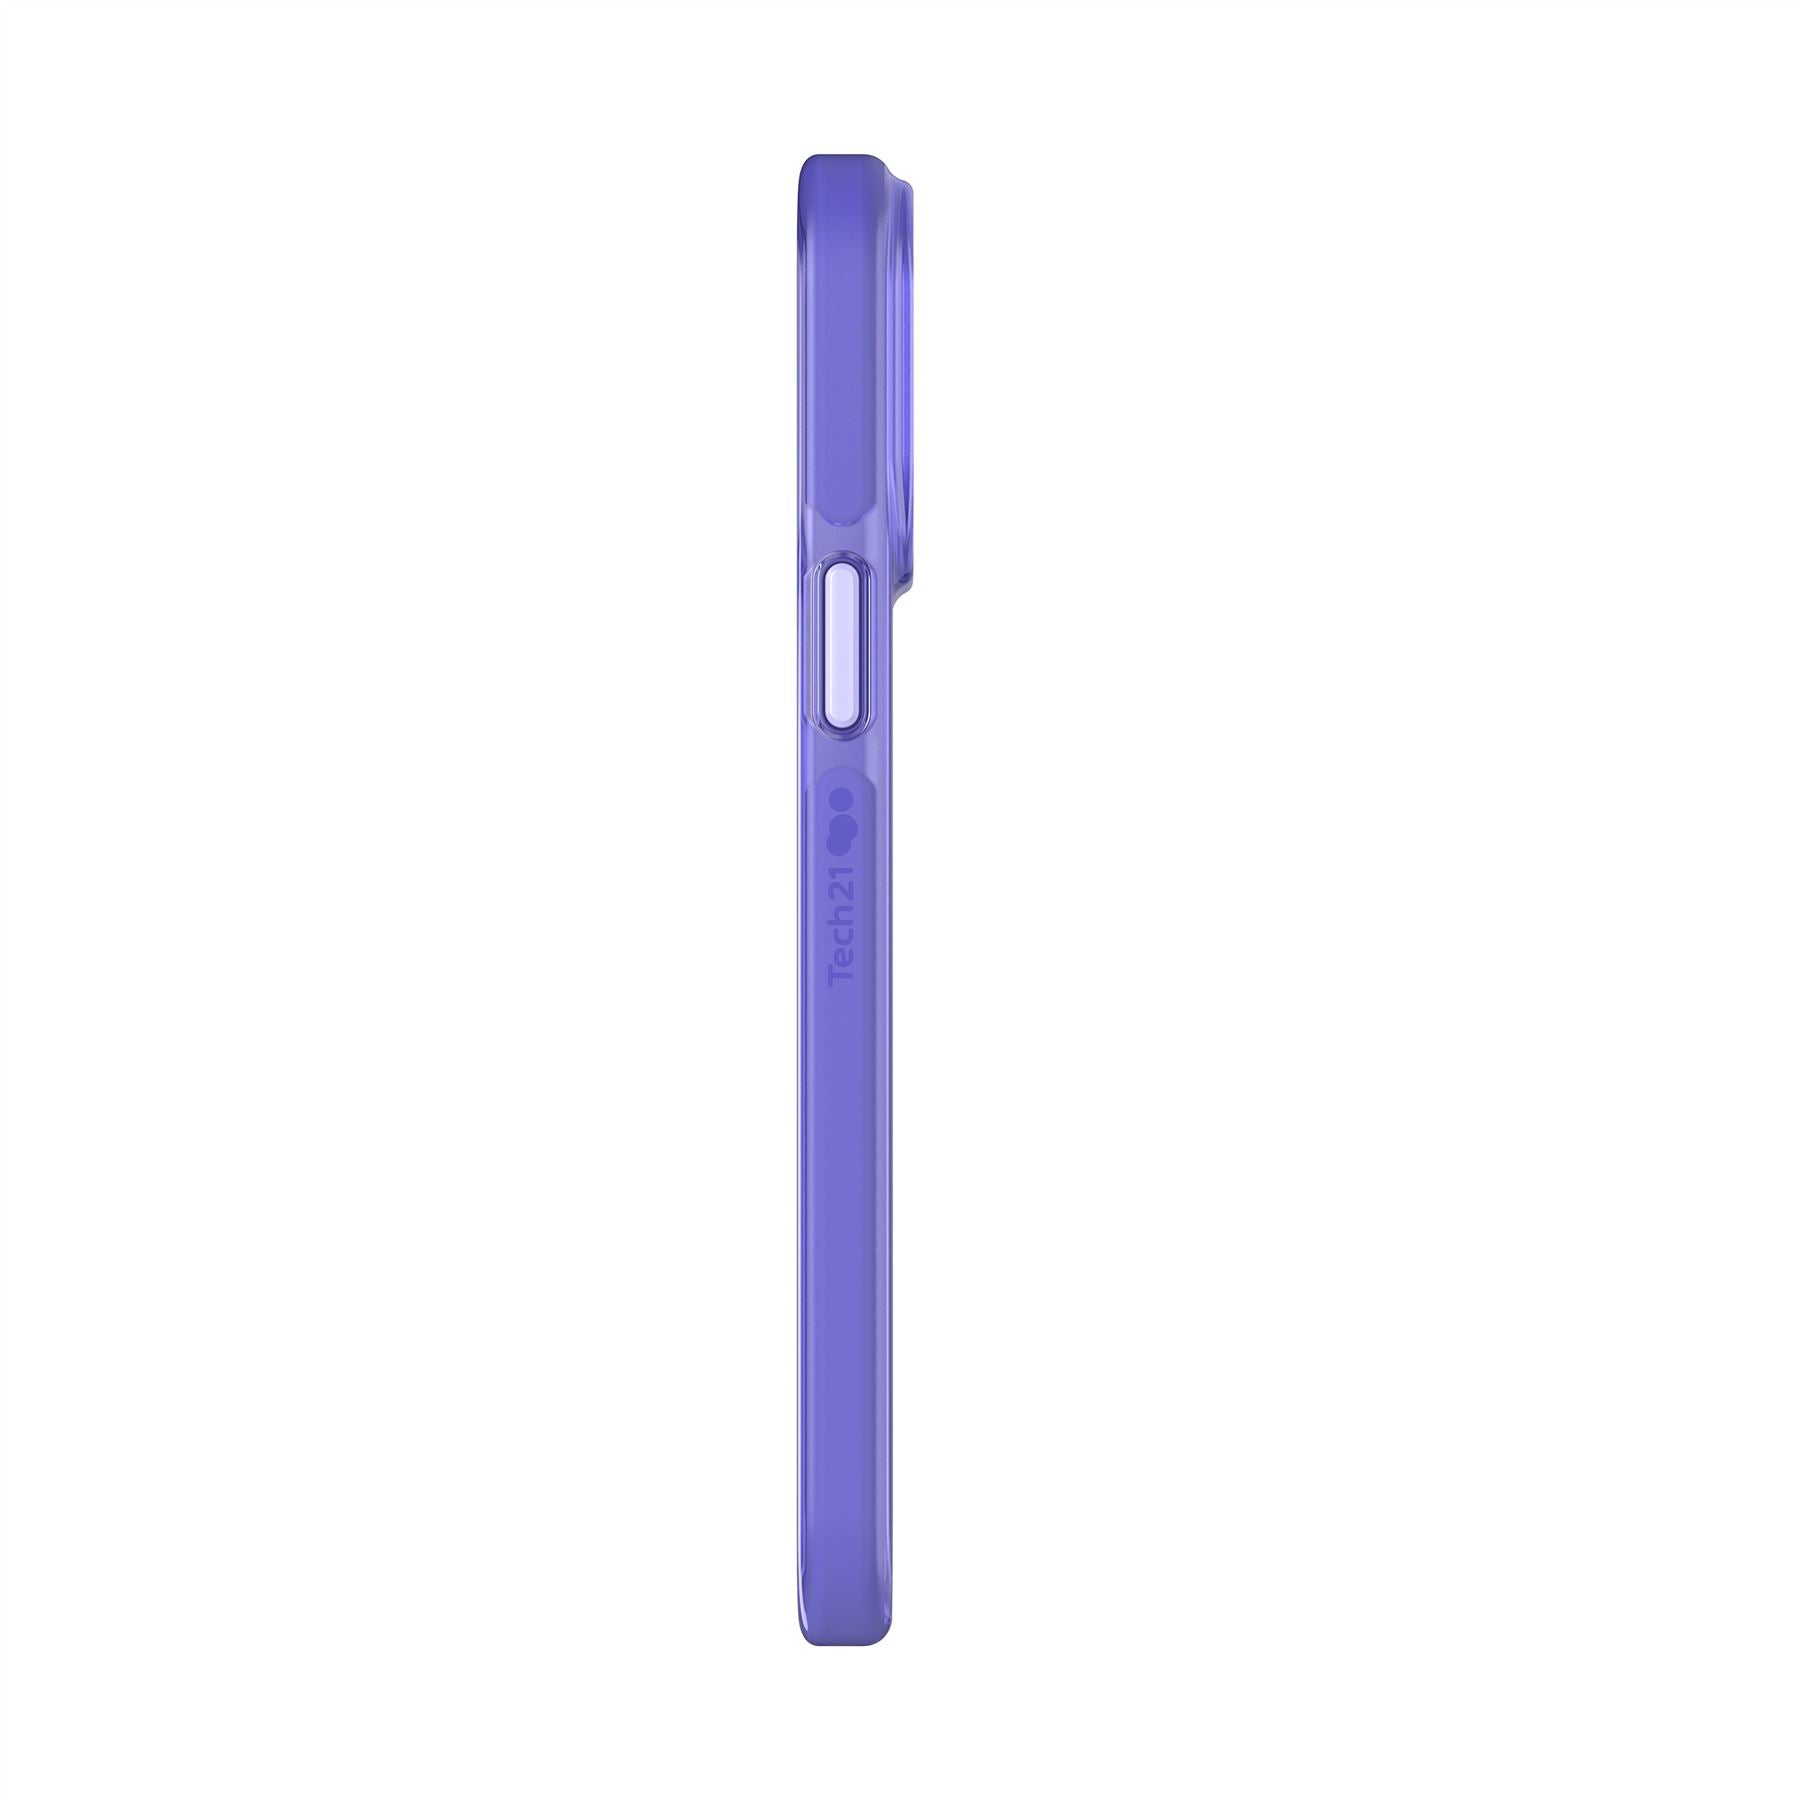 Evo Check - Apple iPhone 13 Pro Max Case - Lavender